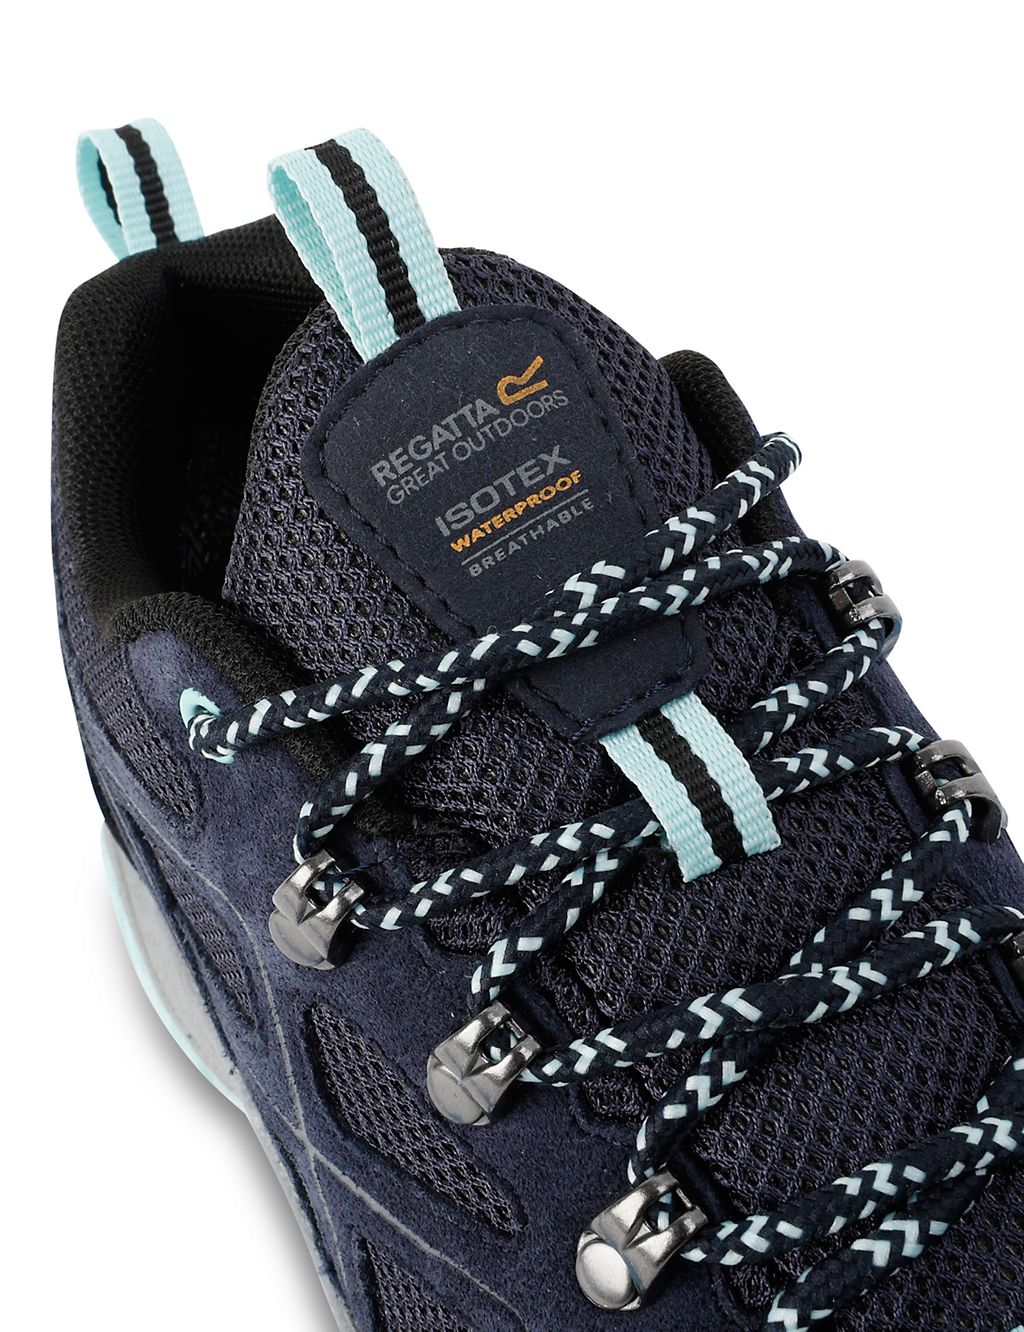 Vendeavour Suede Waterproof Walking Shoes 9 of 9